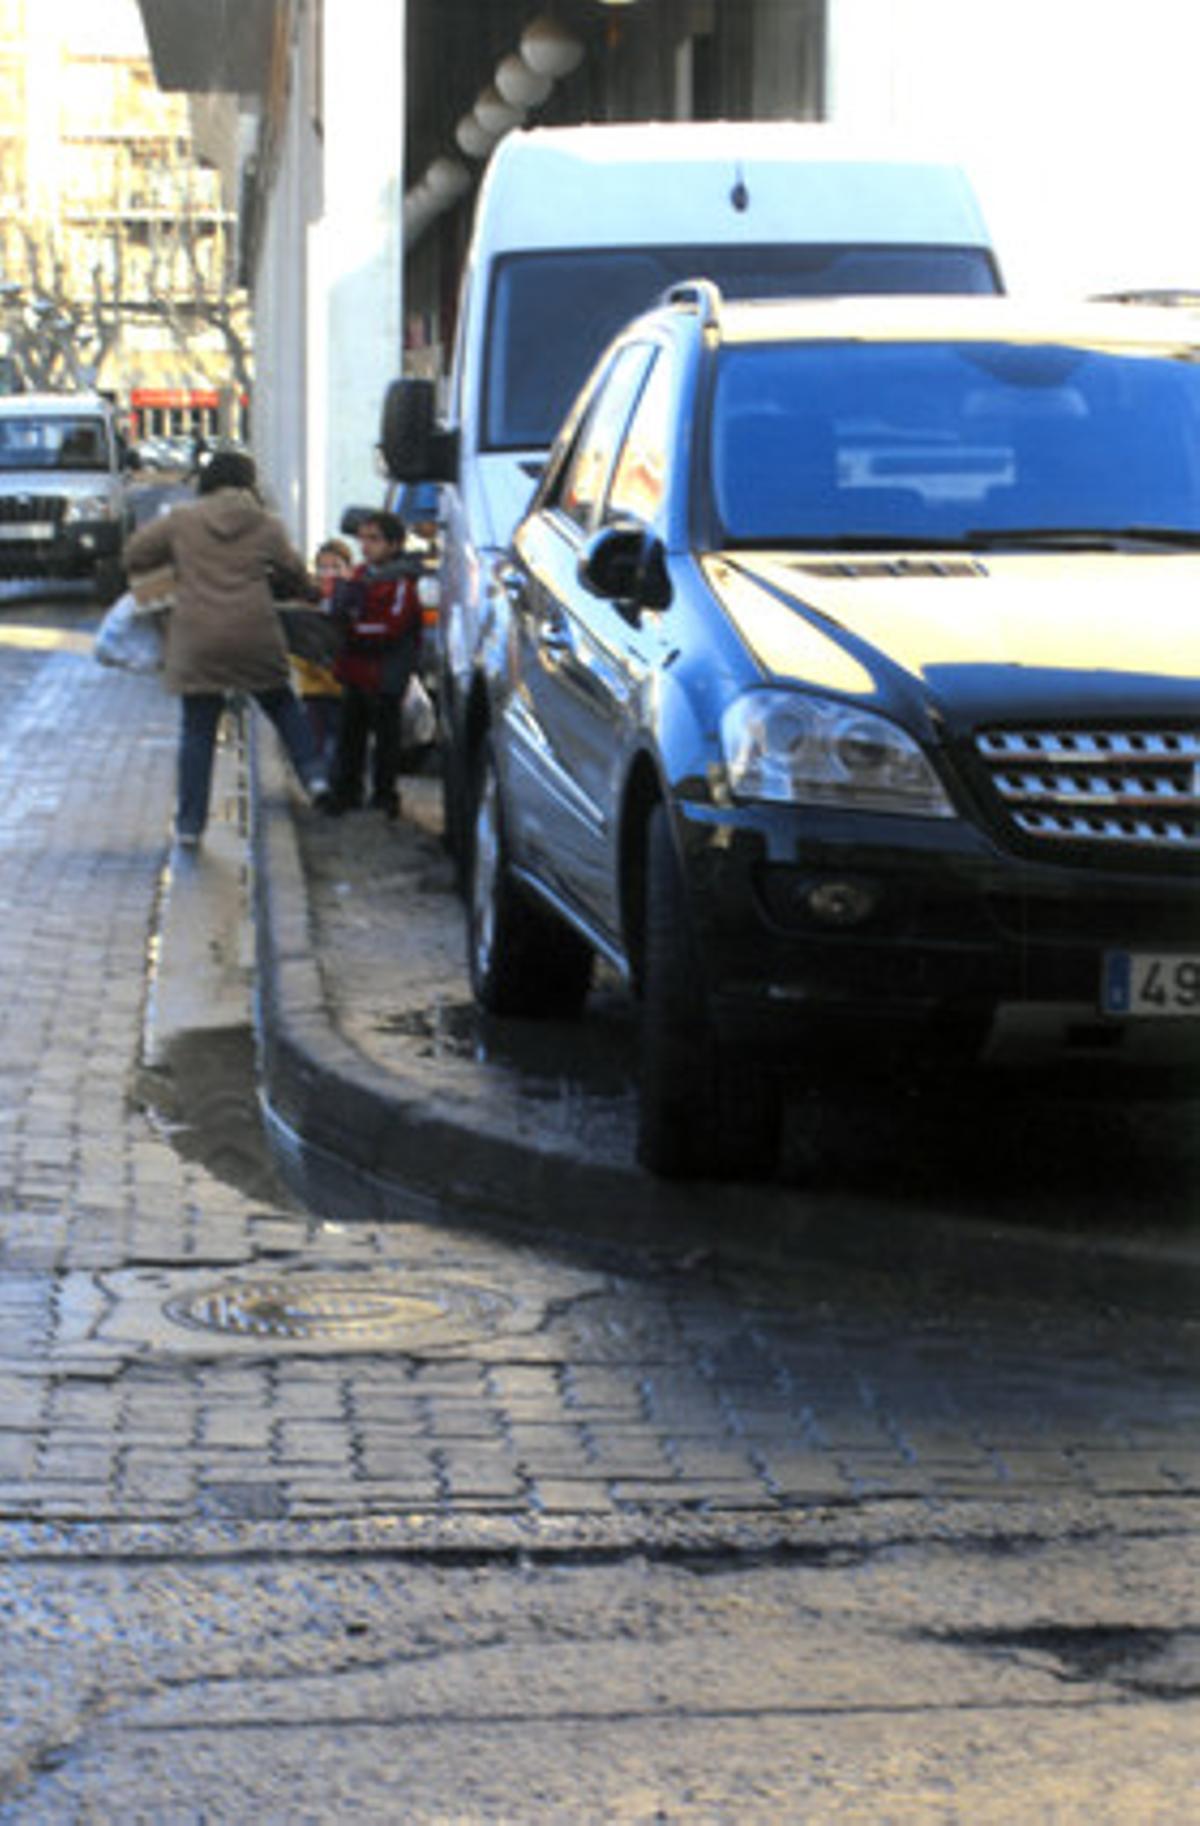 Un vehículo de gama alta, mal aparcado sobre la acera cerca de la estación de autobuses de Figueres. CARLOS MARTÍN